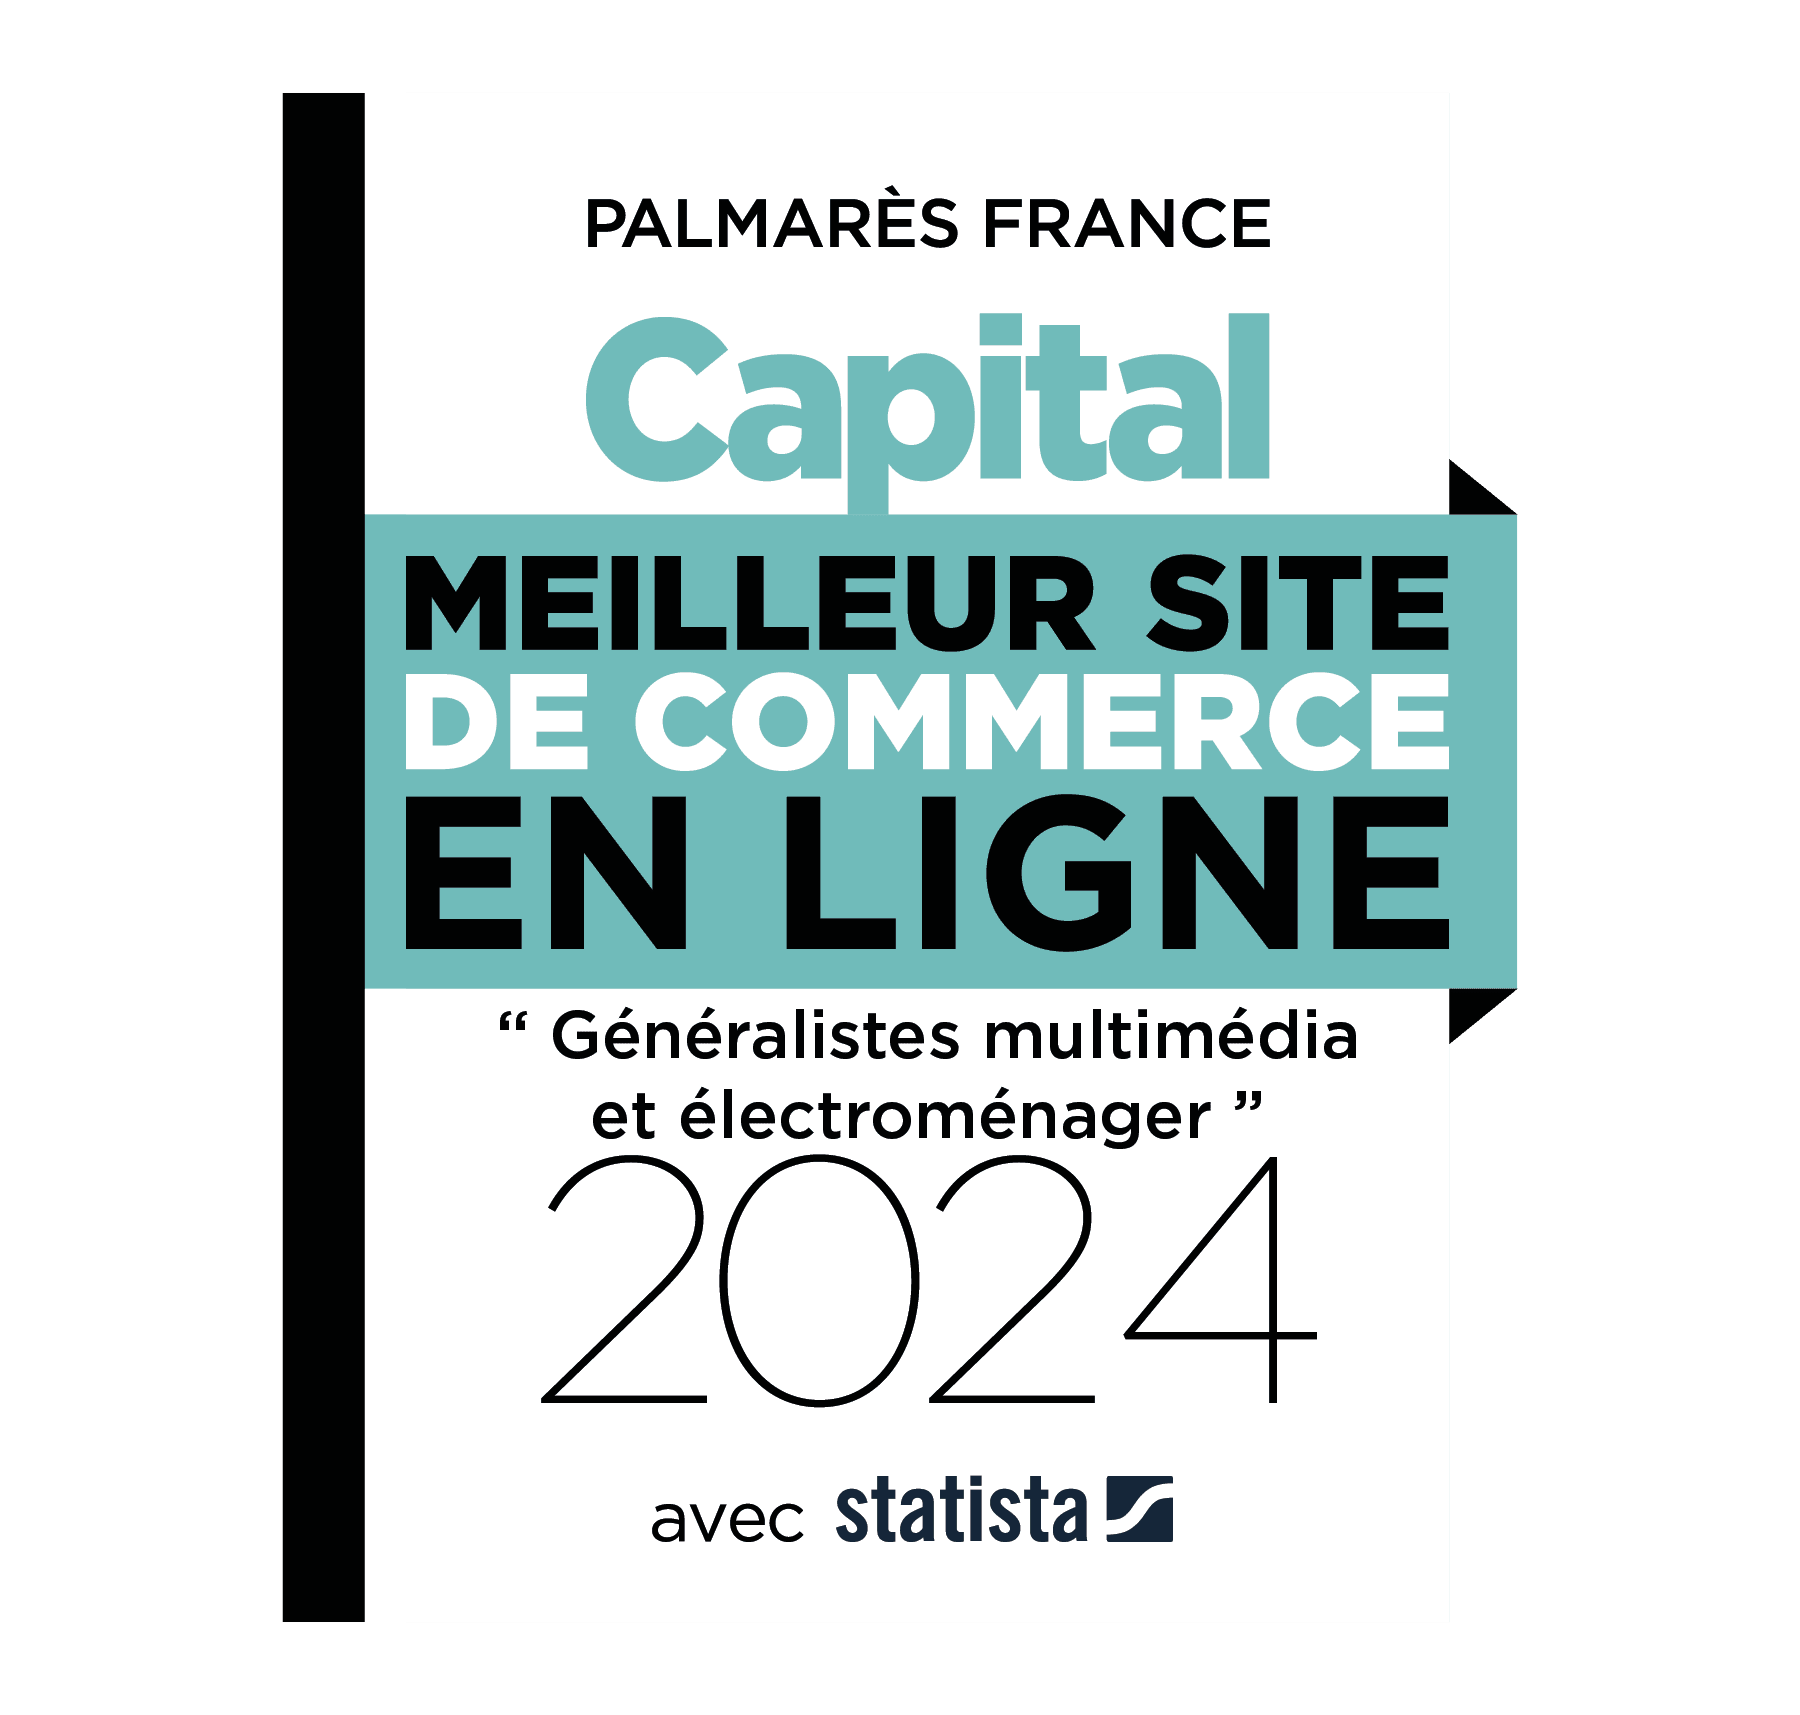 Meilleur site de commerce en ligne "Généralistes multimédia et électroménager 2024" - Magazine CAPITAL